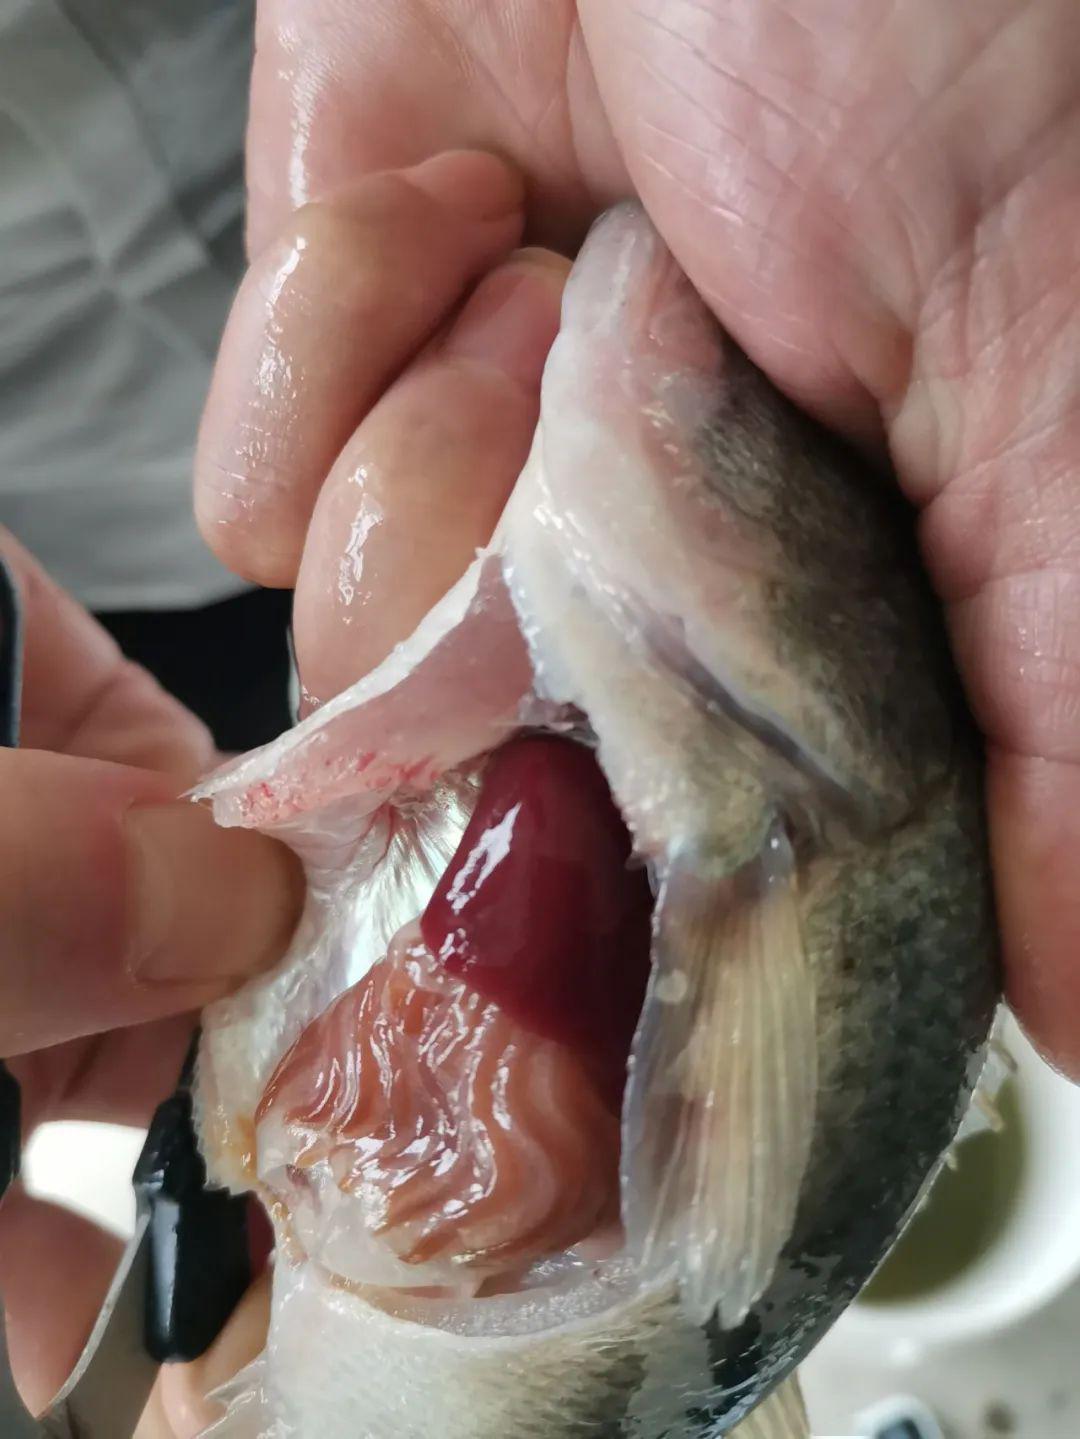 鱼类肝脏健康至关重要但养殖中诸多伤肝行为仍要引起重视